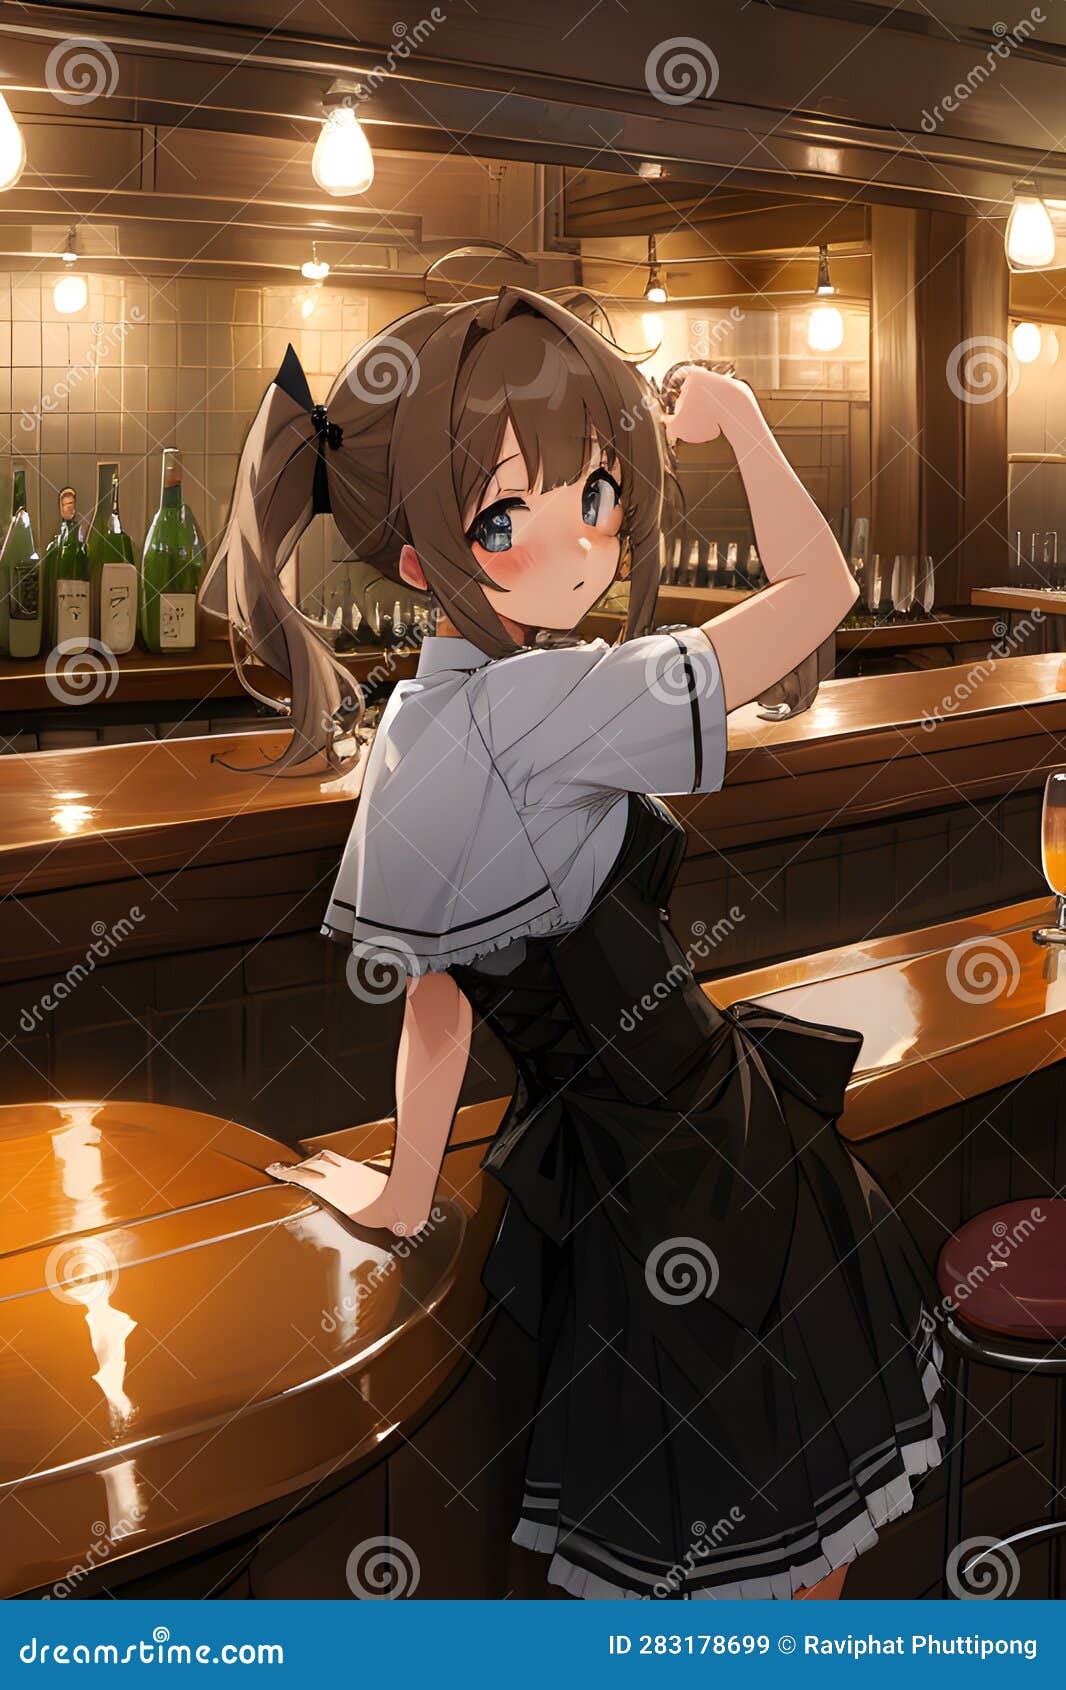 bartender anime 2006｜TikTok Search-demhanvico.com.vn